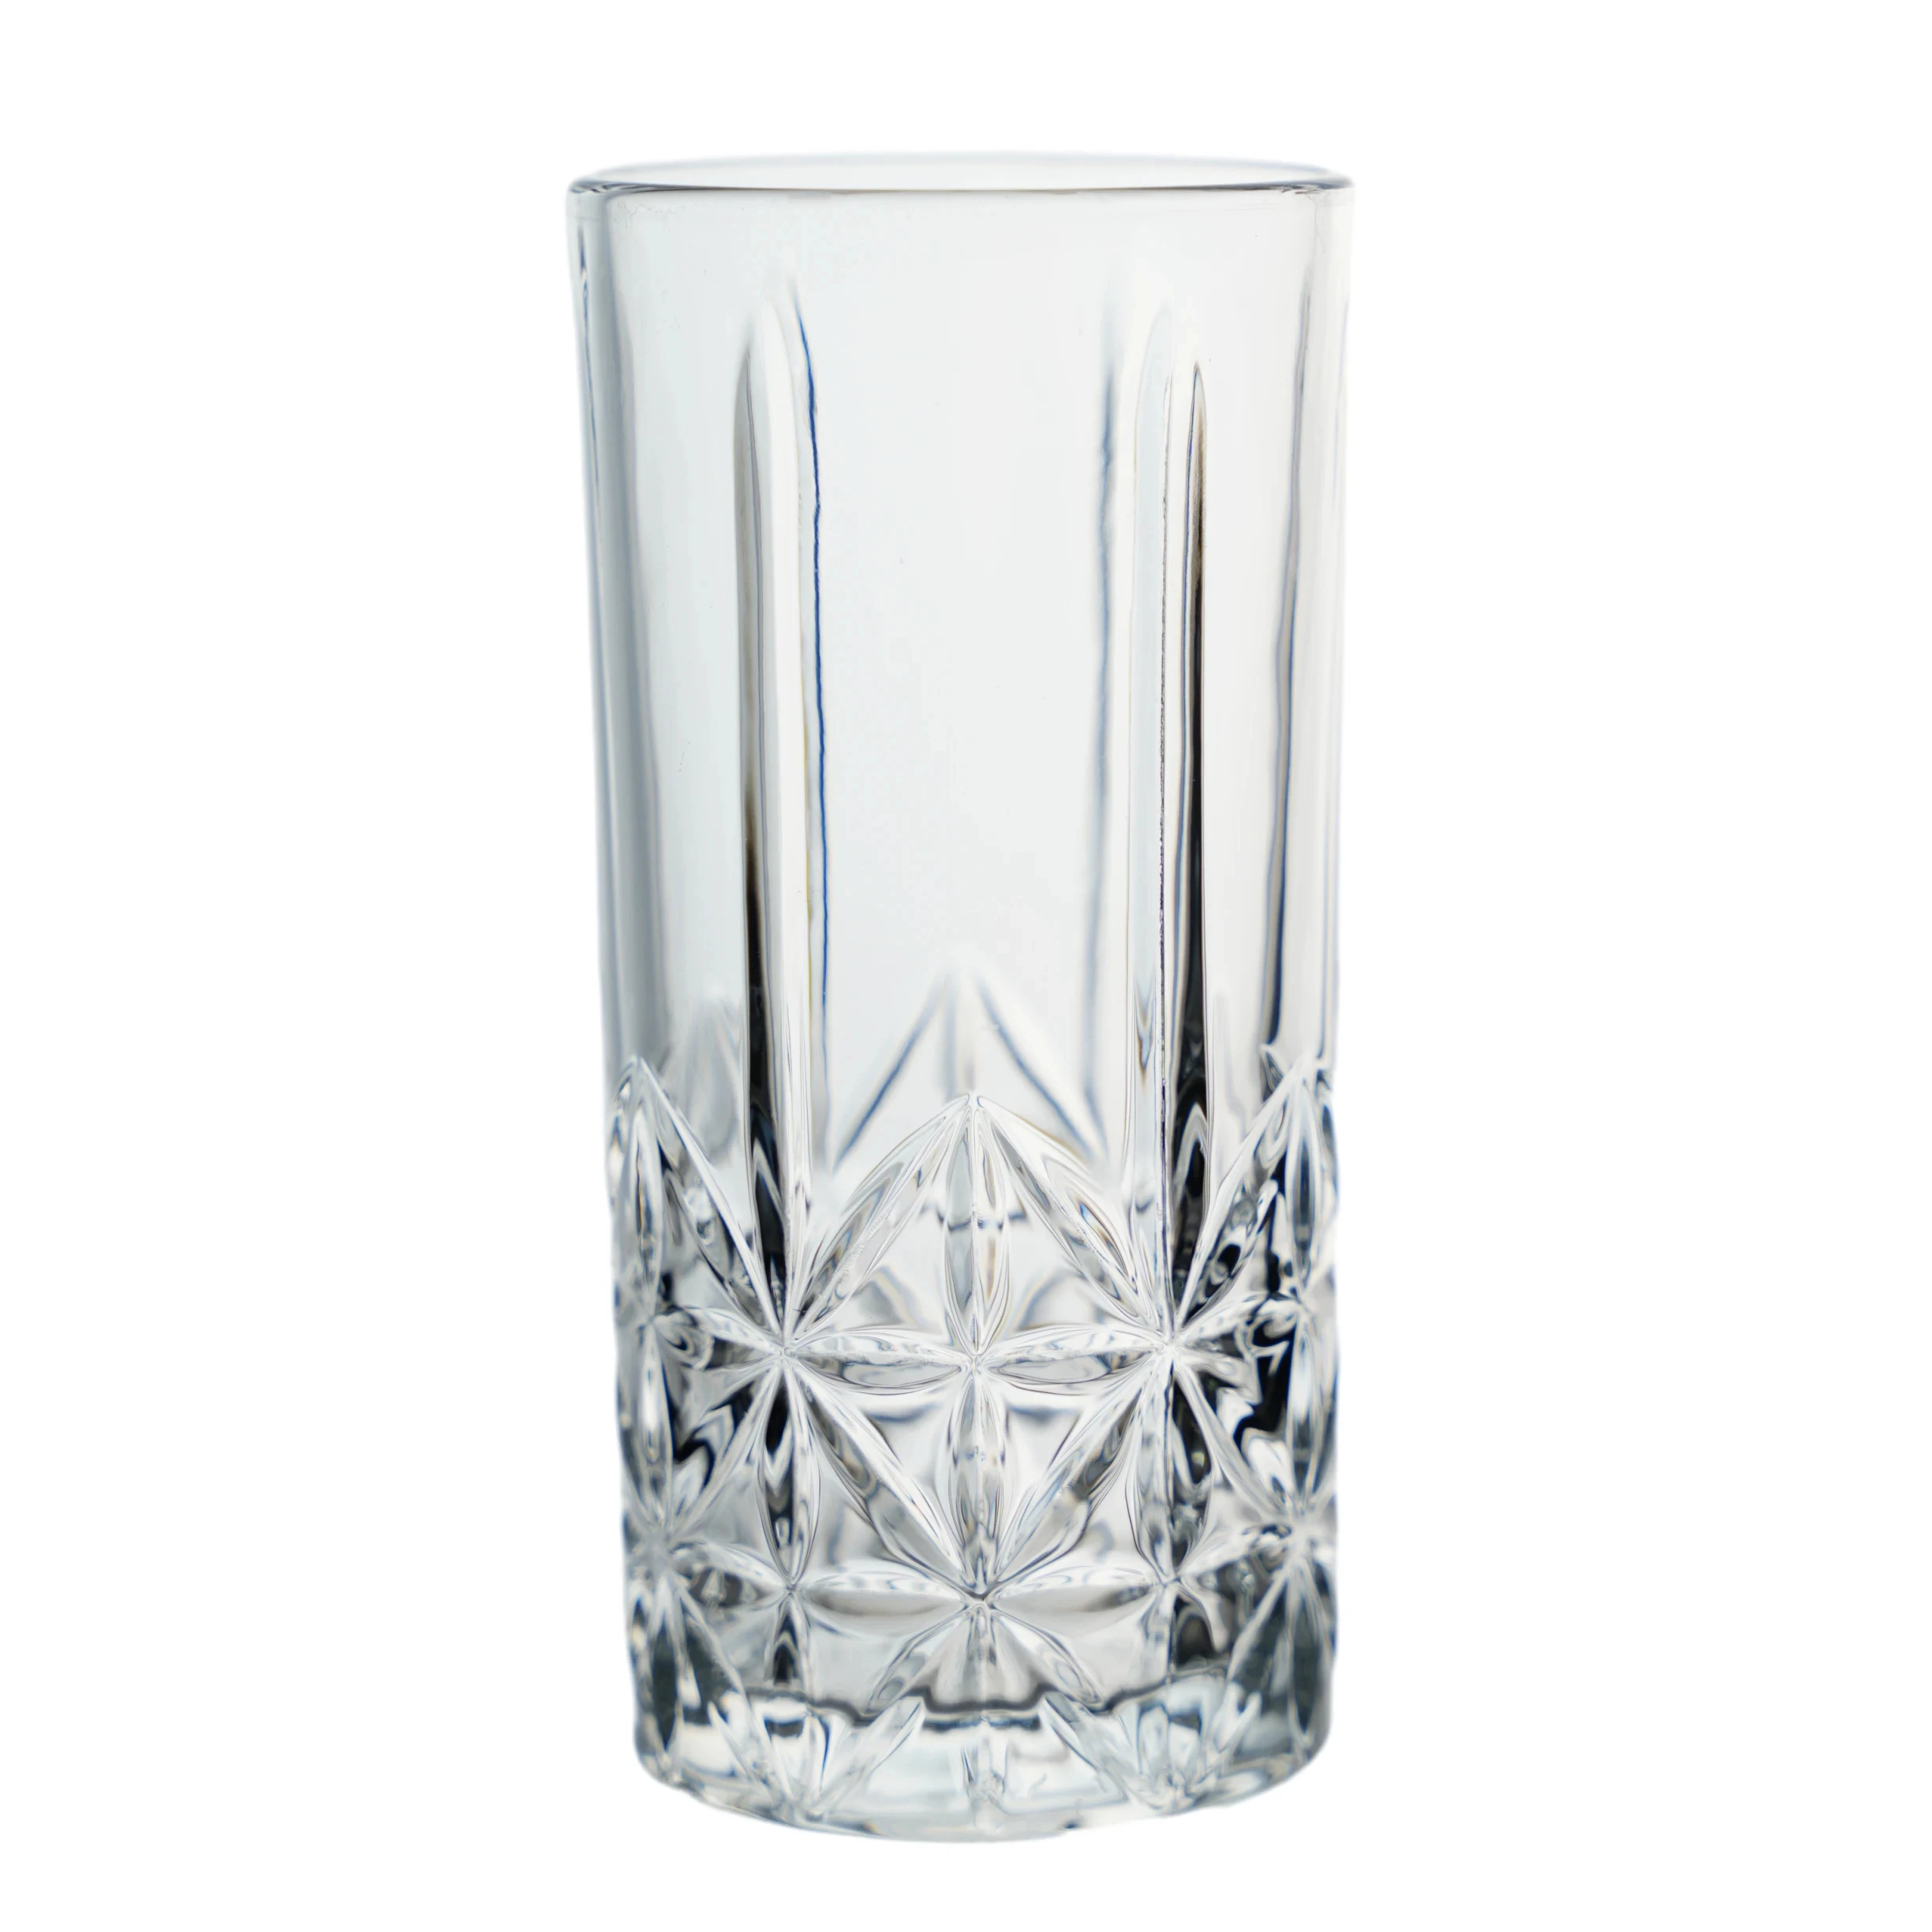 370ml Vintage embossed  glass beer mug cup beer glass hand blown glassware